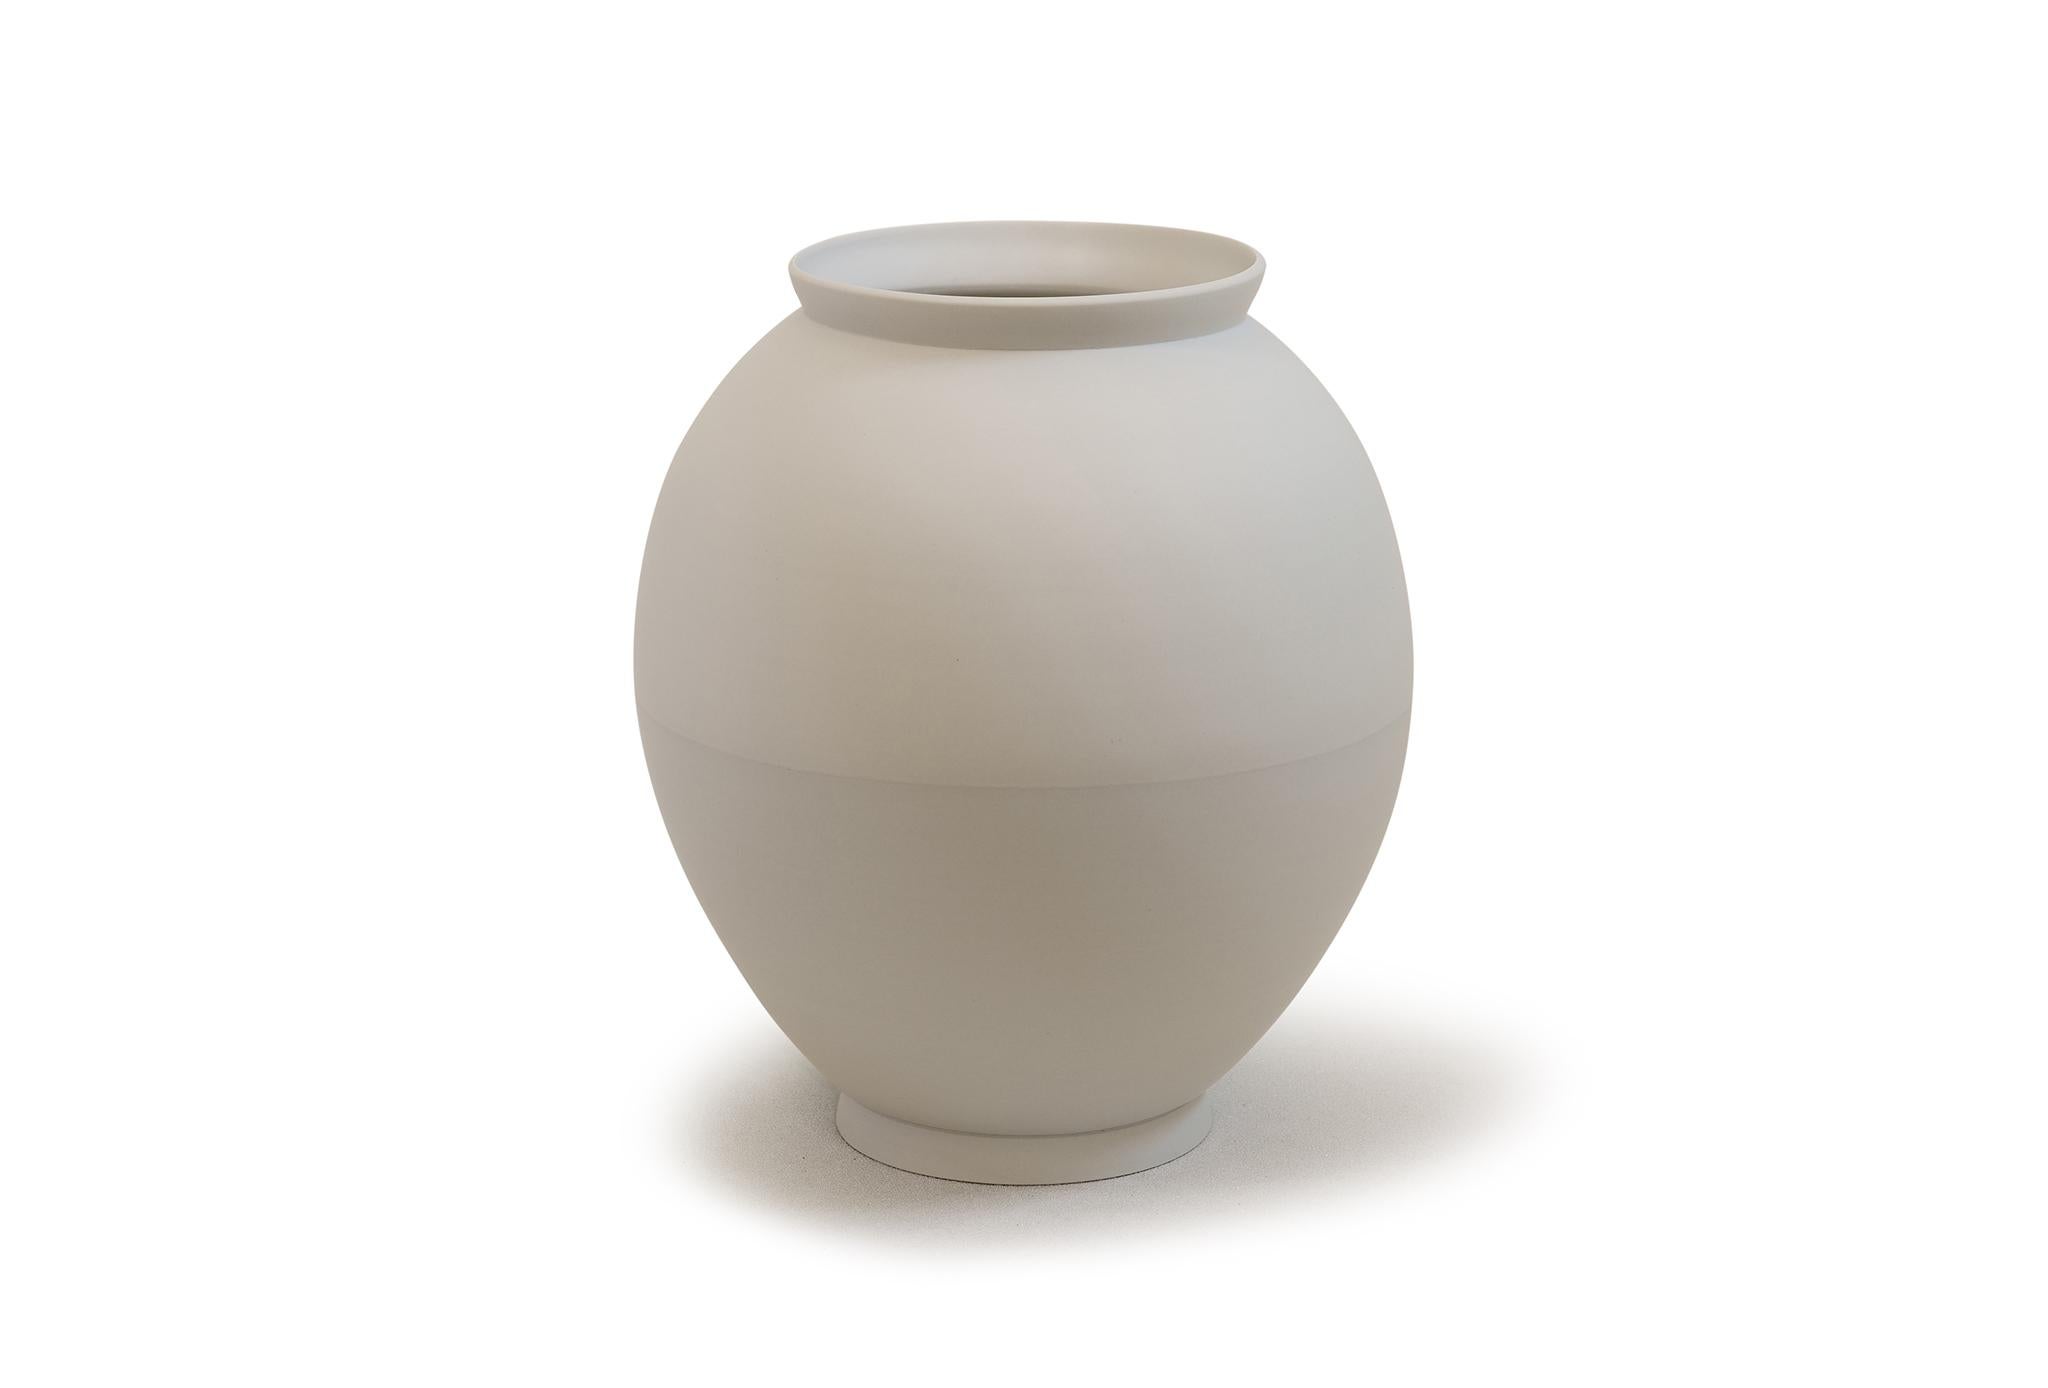 Halbe Vase von Jung Hong.
Einzigartiges Stück.
Abmessungen: B 30,5 x T 30,5 x H 34,5 cm.
MATERIALIEN: Porzellan.

Ich verwende die Technik des 'sang-gam' (=Einlegearbeit) mit meinem speziellen Werkzeug, das ich selbst hergestellt habe, und kreiere